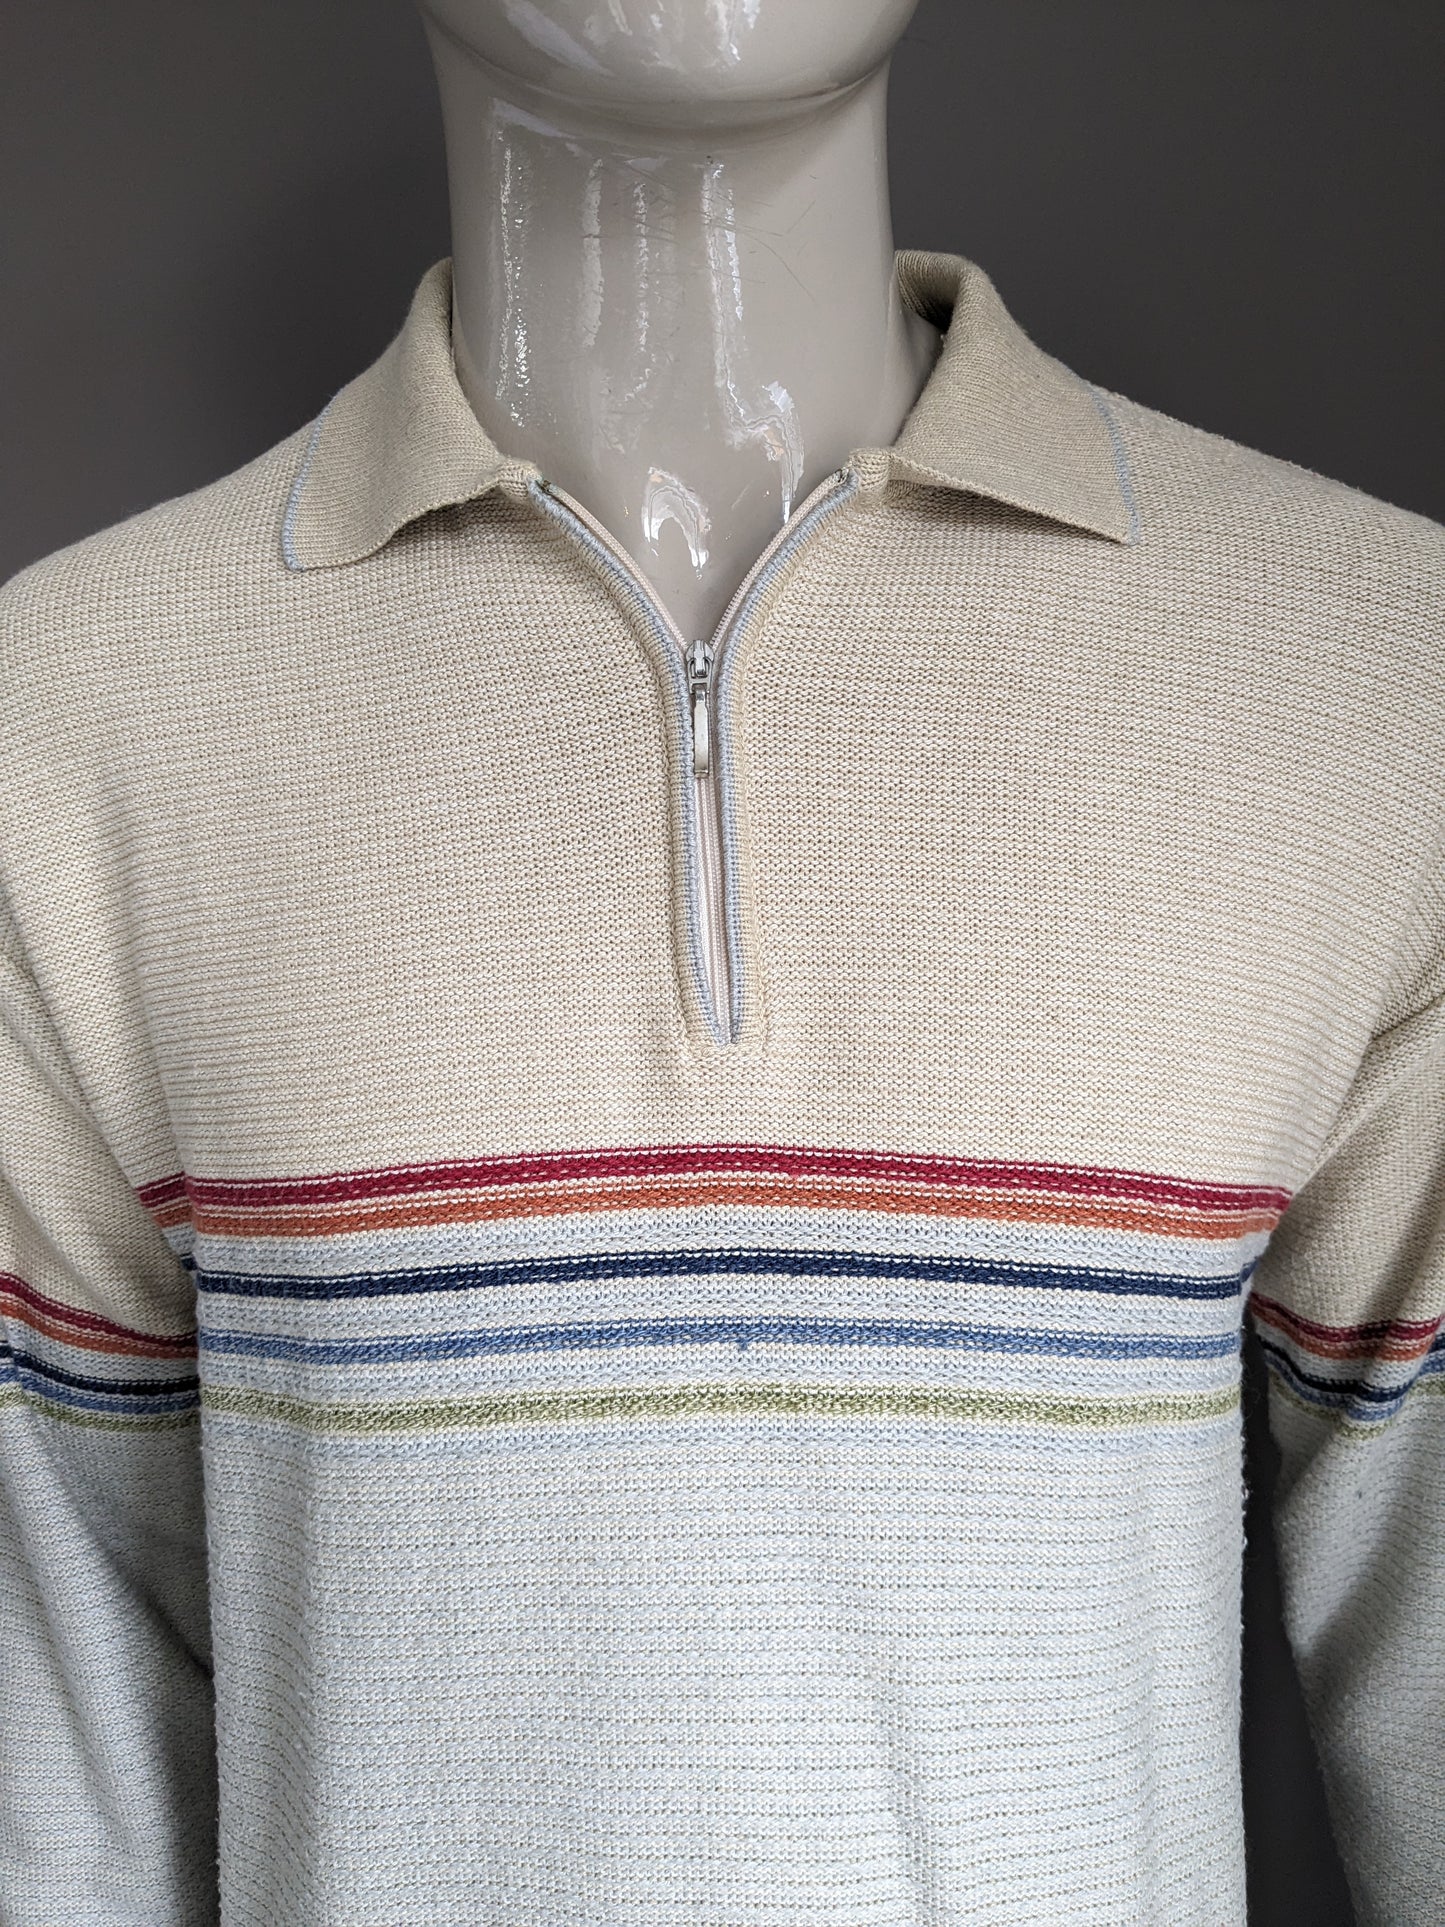 Vintage News Polo -Pullover mit Reißverschluss. Beige. Größe L.